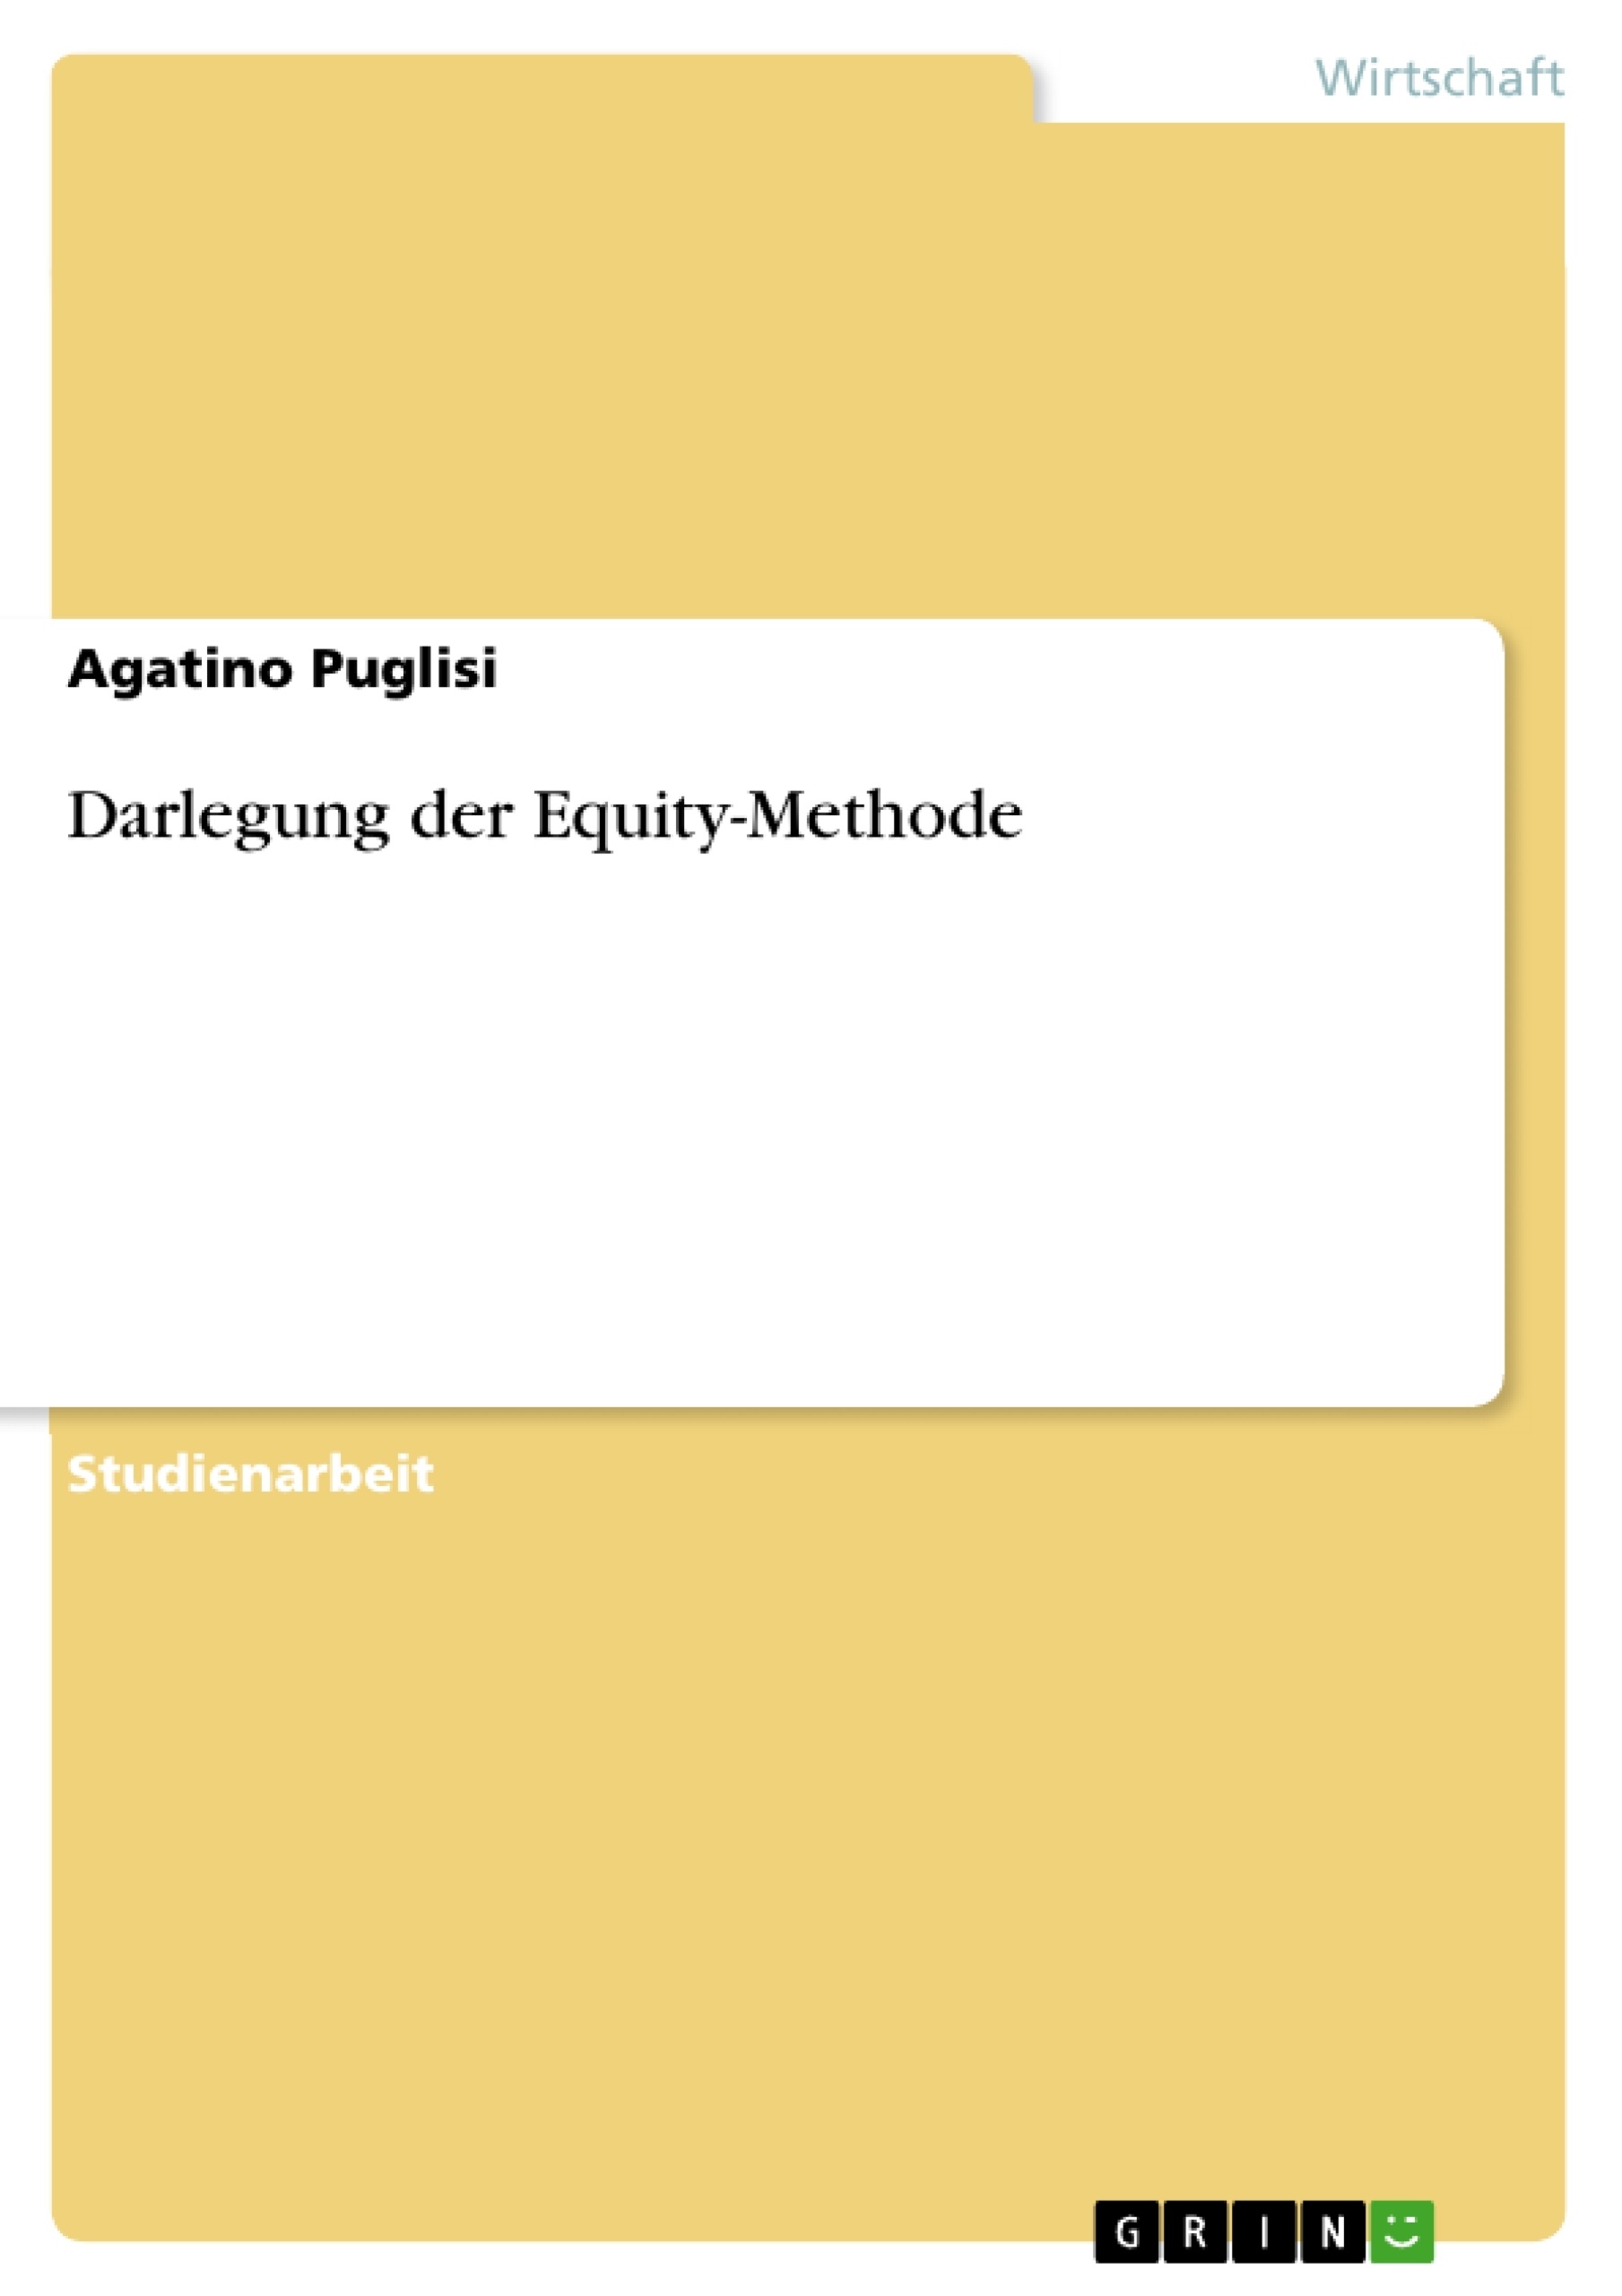 Title: Darlegung der Equity-Methode